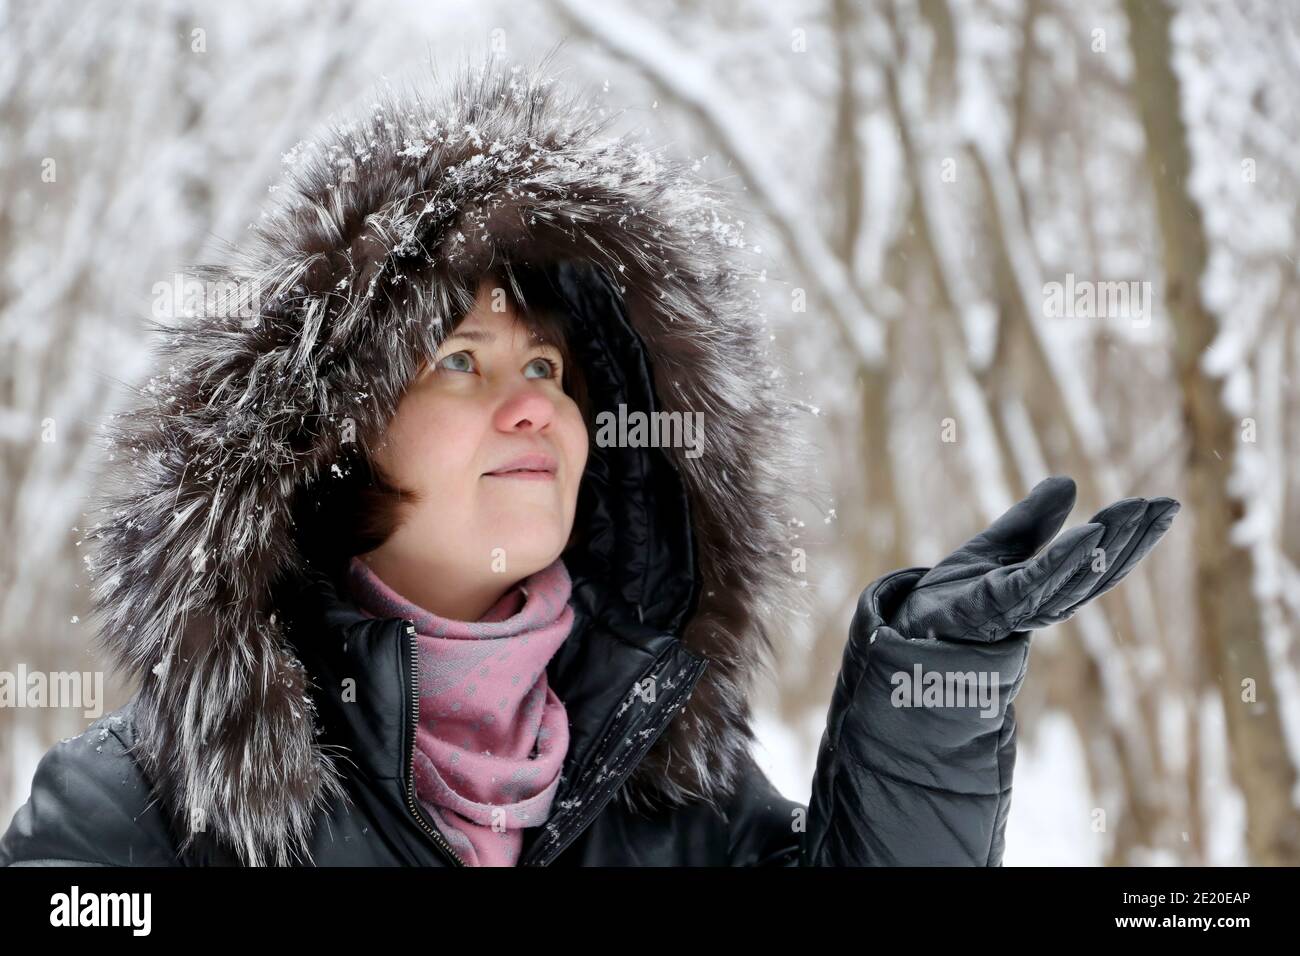 Une femme heureuse, en fourrure, qui profite du temps enneigé, attrape des flocons de neige avec ses mains. Chute de neige dans le parc d'hiver, saison froide Banque D'Images